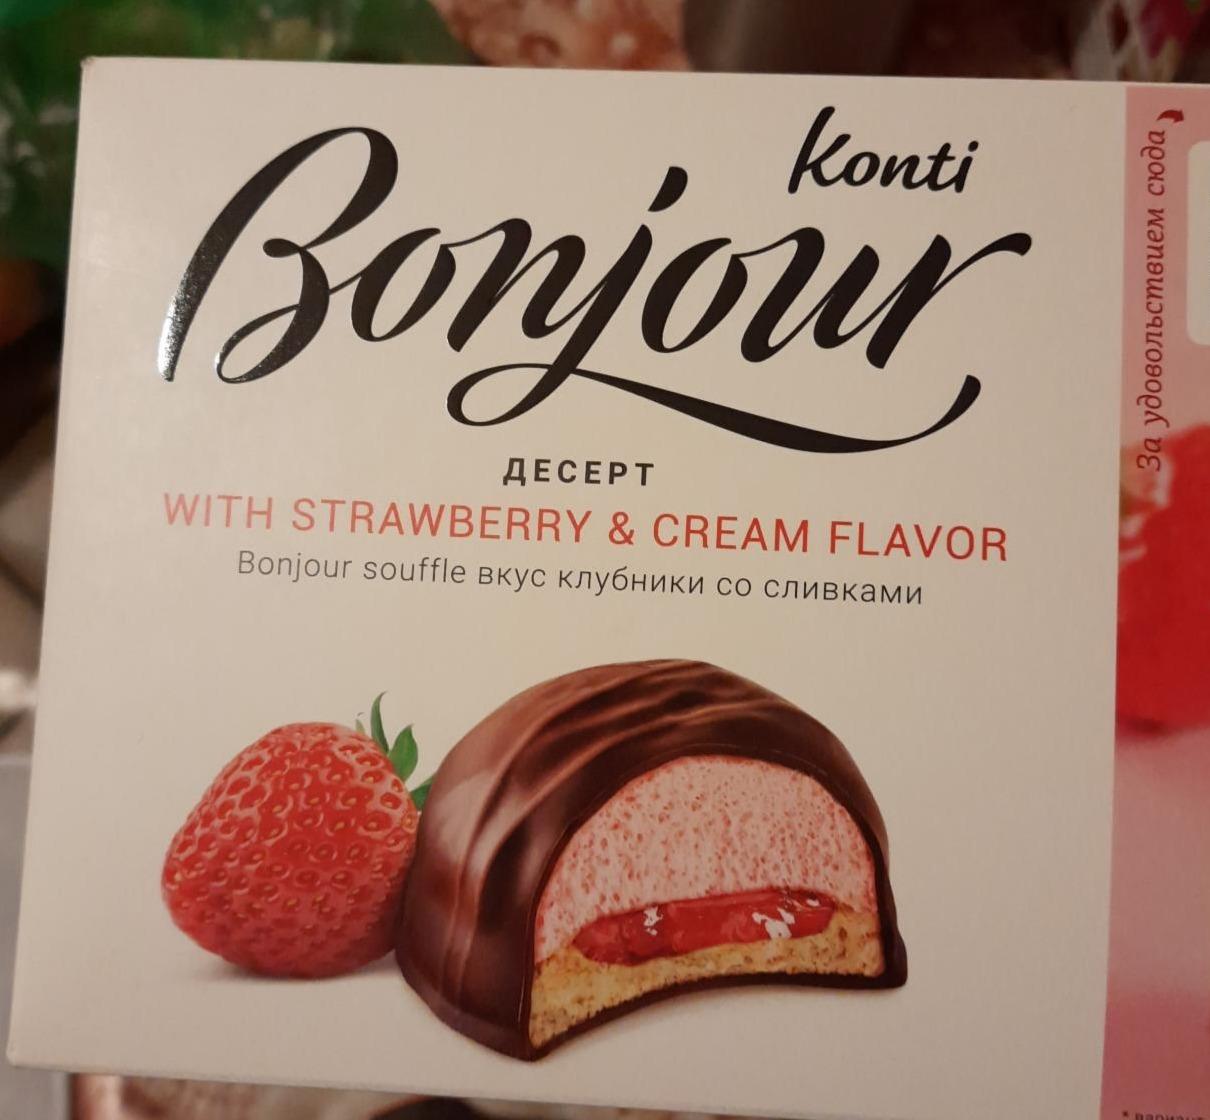 Zdjęcia - Bonjour dessert strawberry & cream Konti